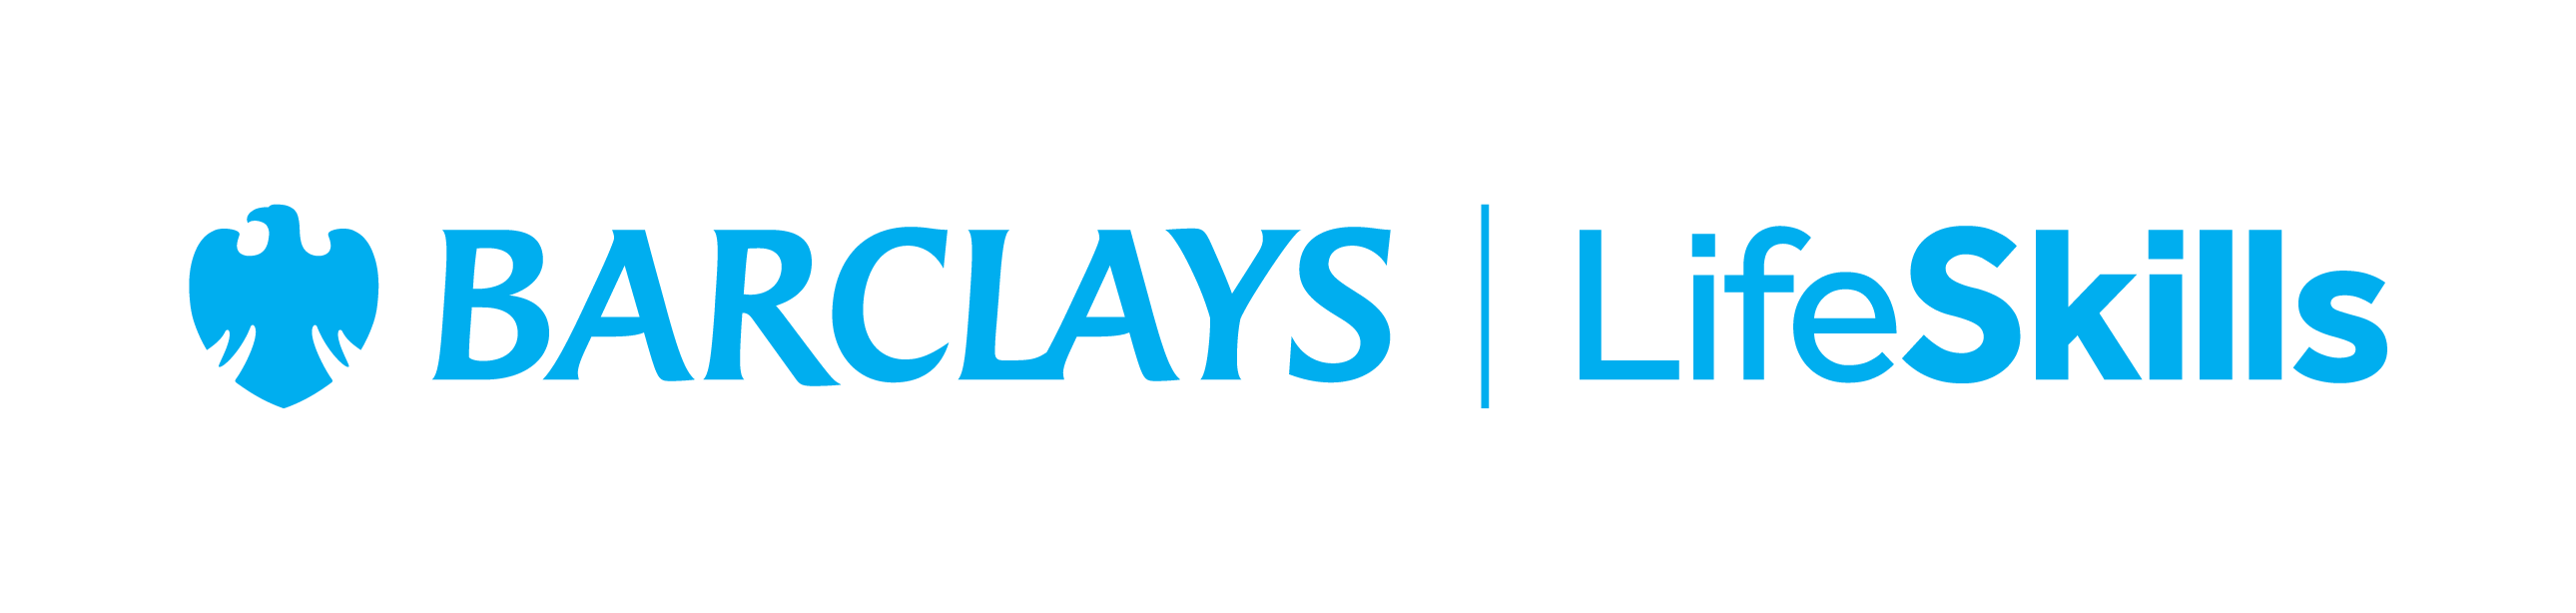 Barclays LifeSkills logo